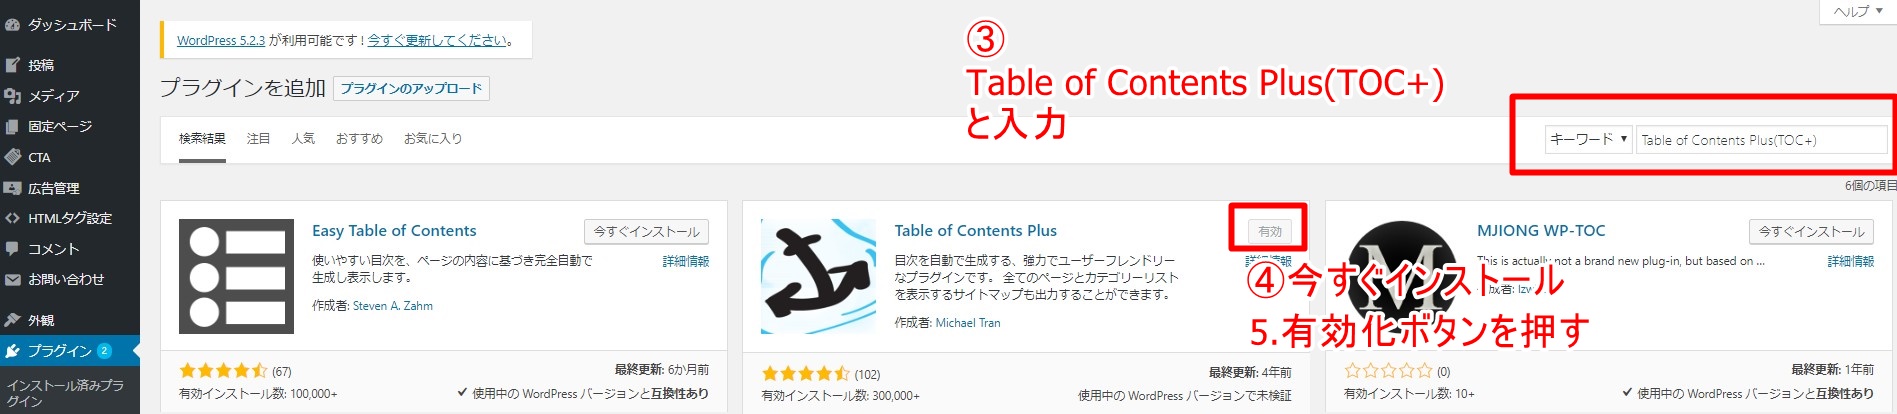 ブログ目次の作り方|Table of Contents Plus(TOC+)の設定